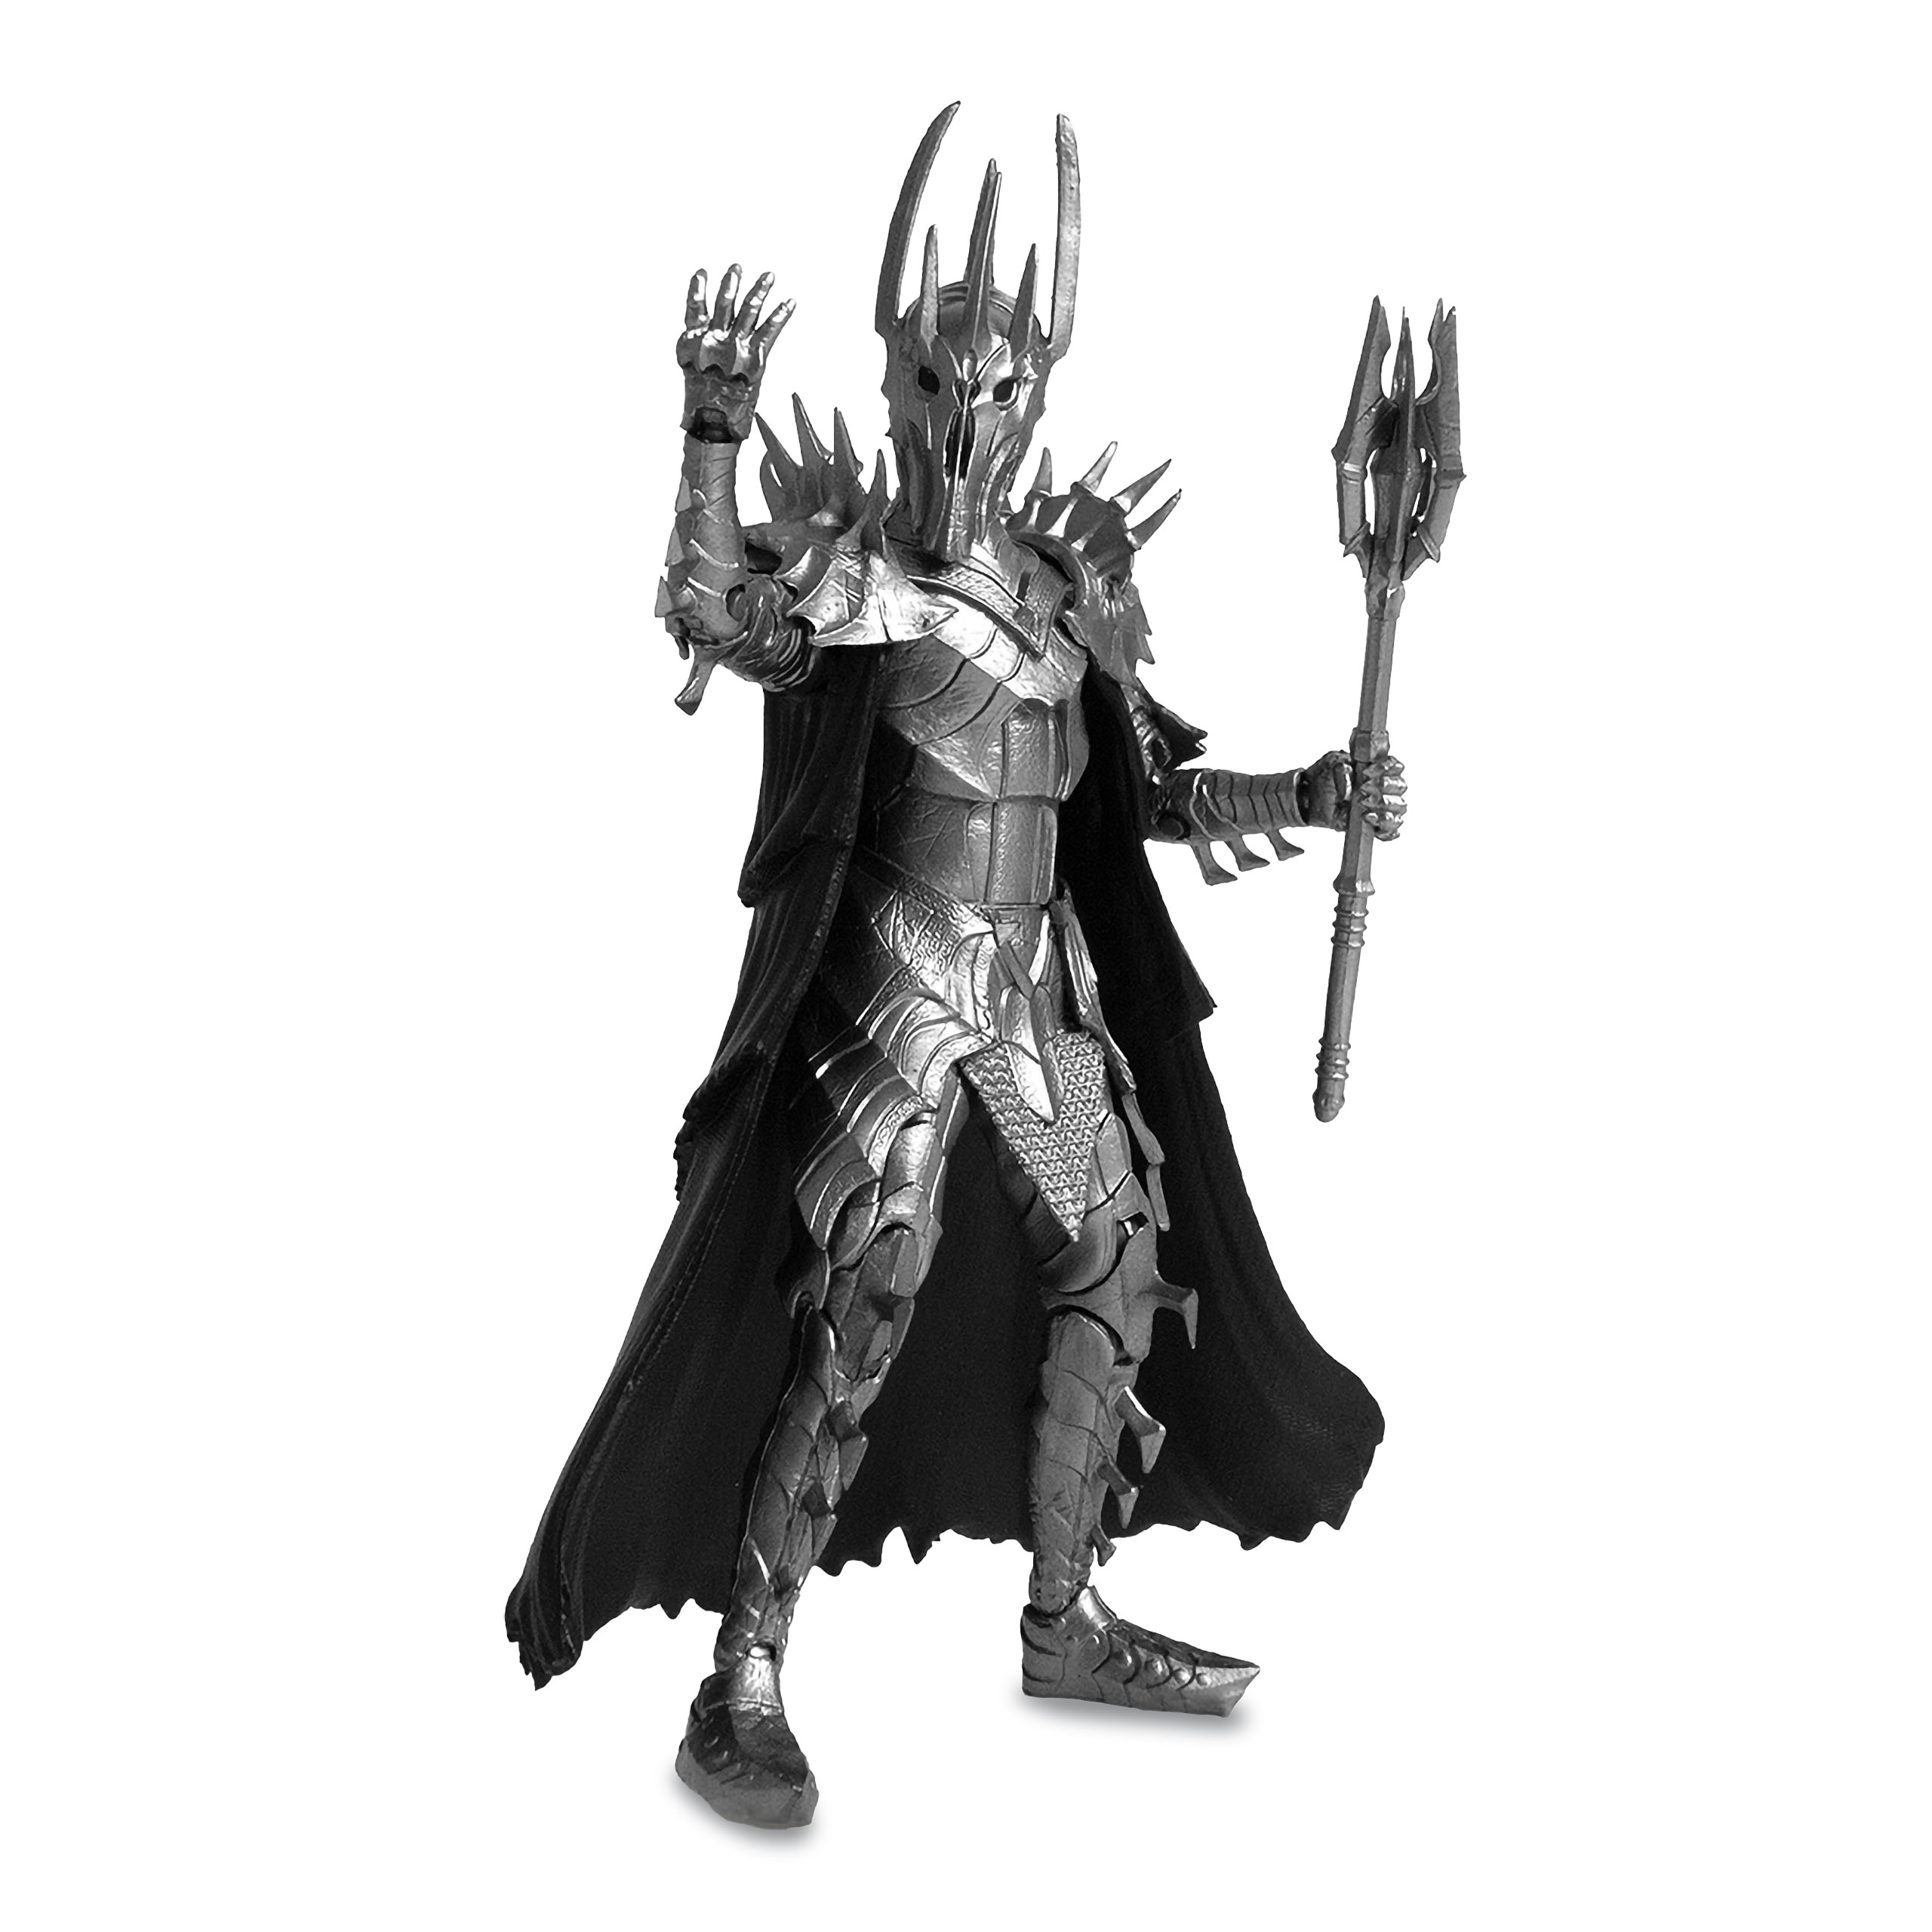 Herr der Ringe - Sauron BST AXN Actionfigur